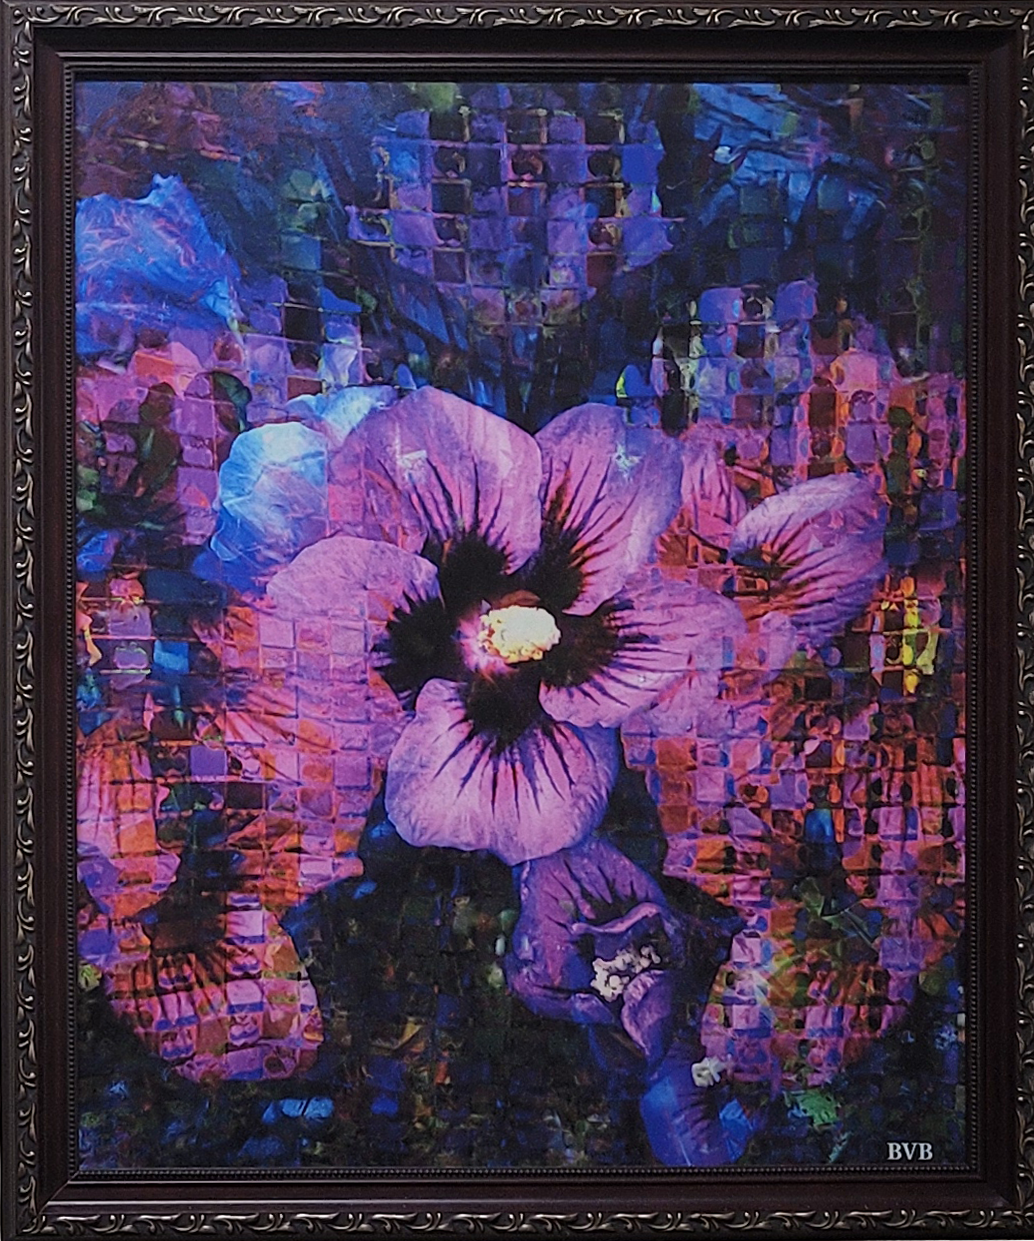 Artwork - Buddy Van Buren, Puzzle Flower